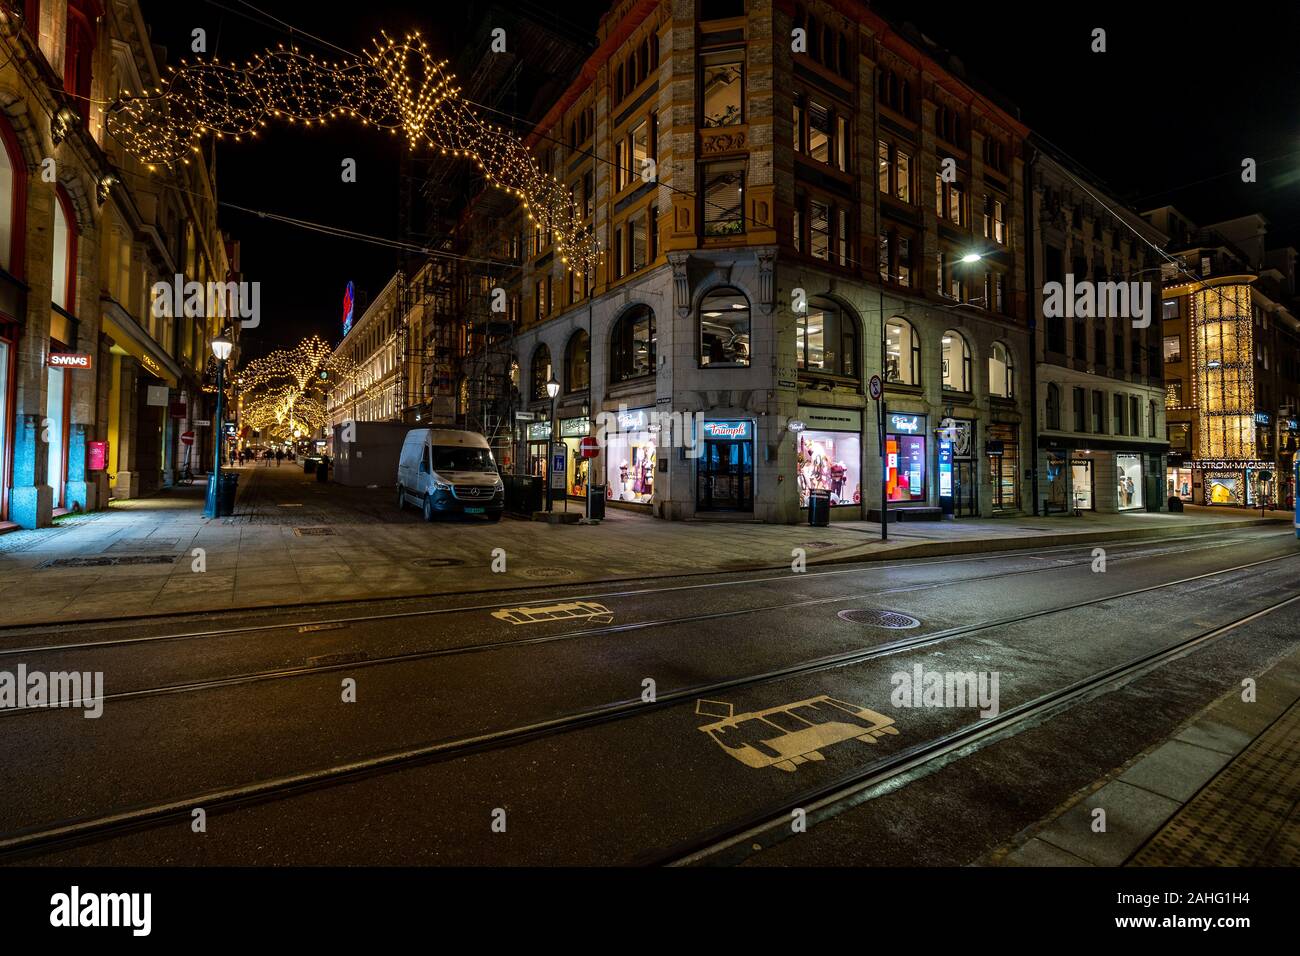 Oslo, Norvège - décorations de Noël dans la ville la nuit Banque D'Images